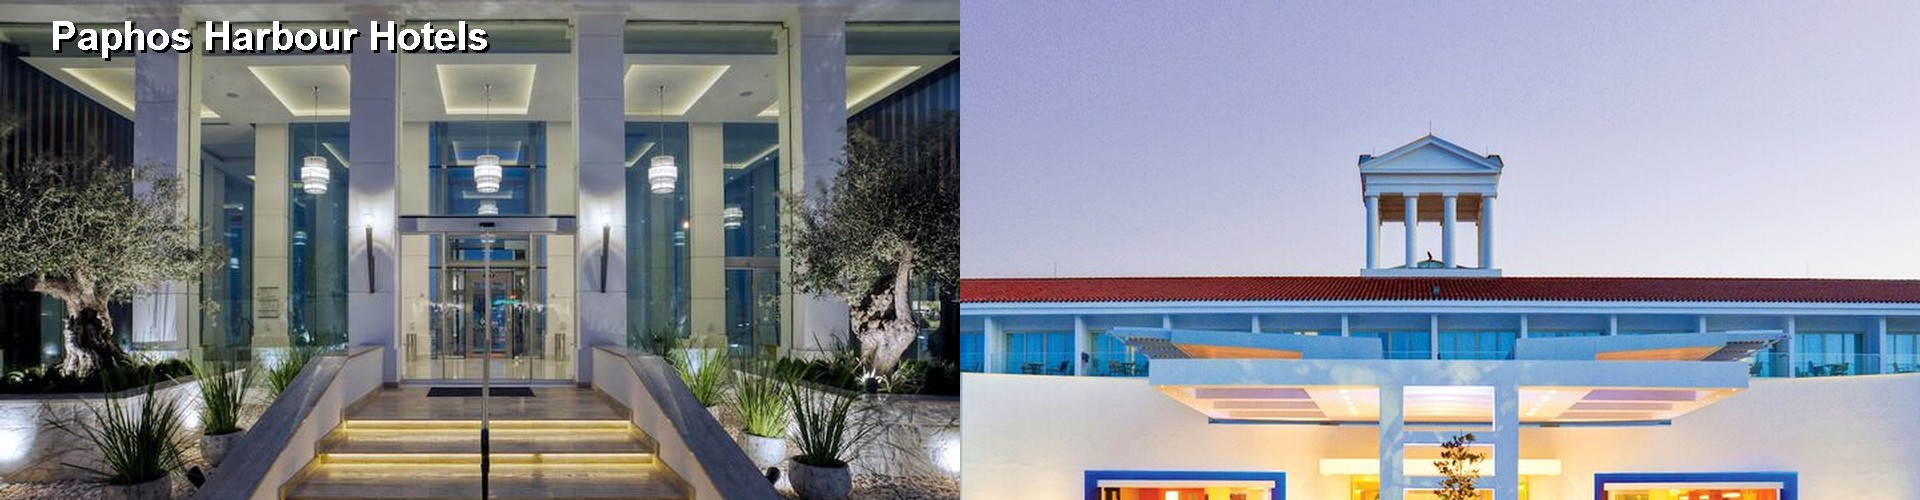 5 Best Hotels near Paphos Harbour